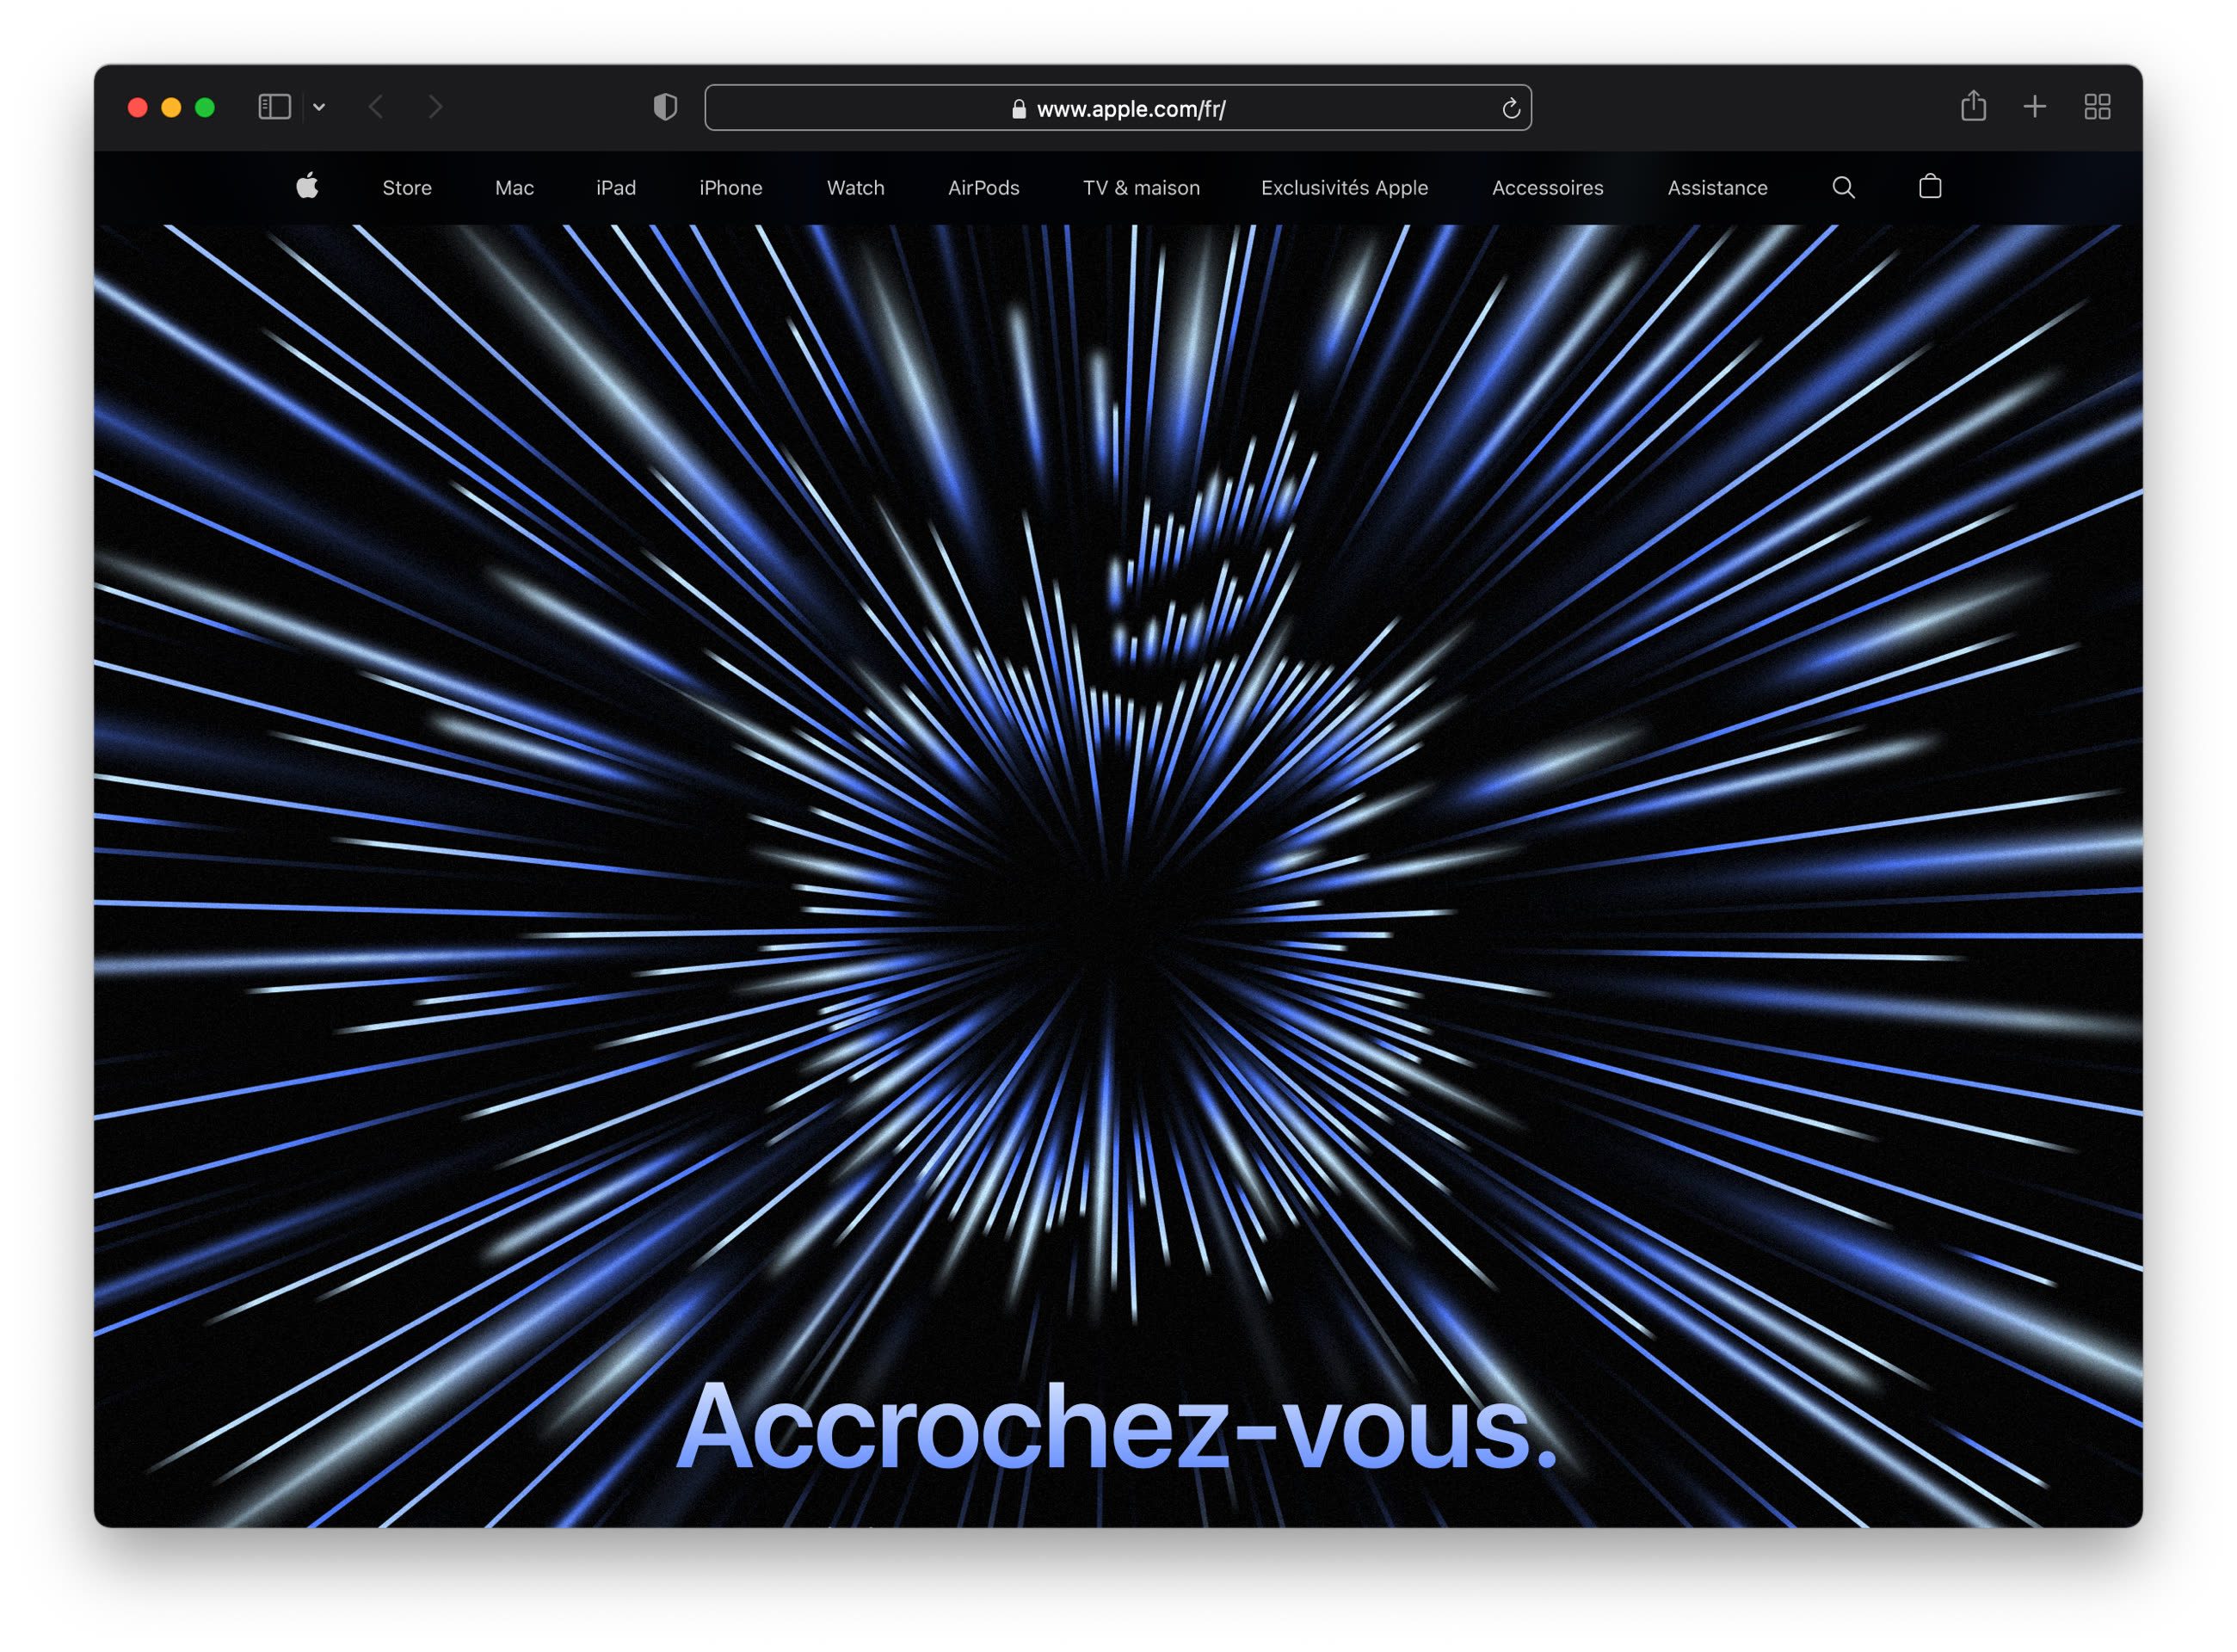 Les nouveaux accessoires des MacBook Pro, dont la chiffonnette Apple à 25  €, sont disponibles